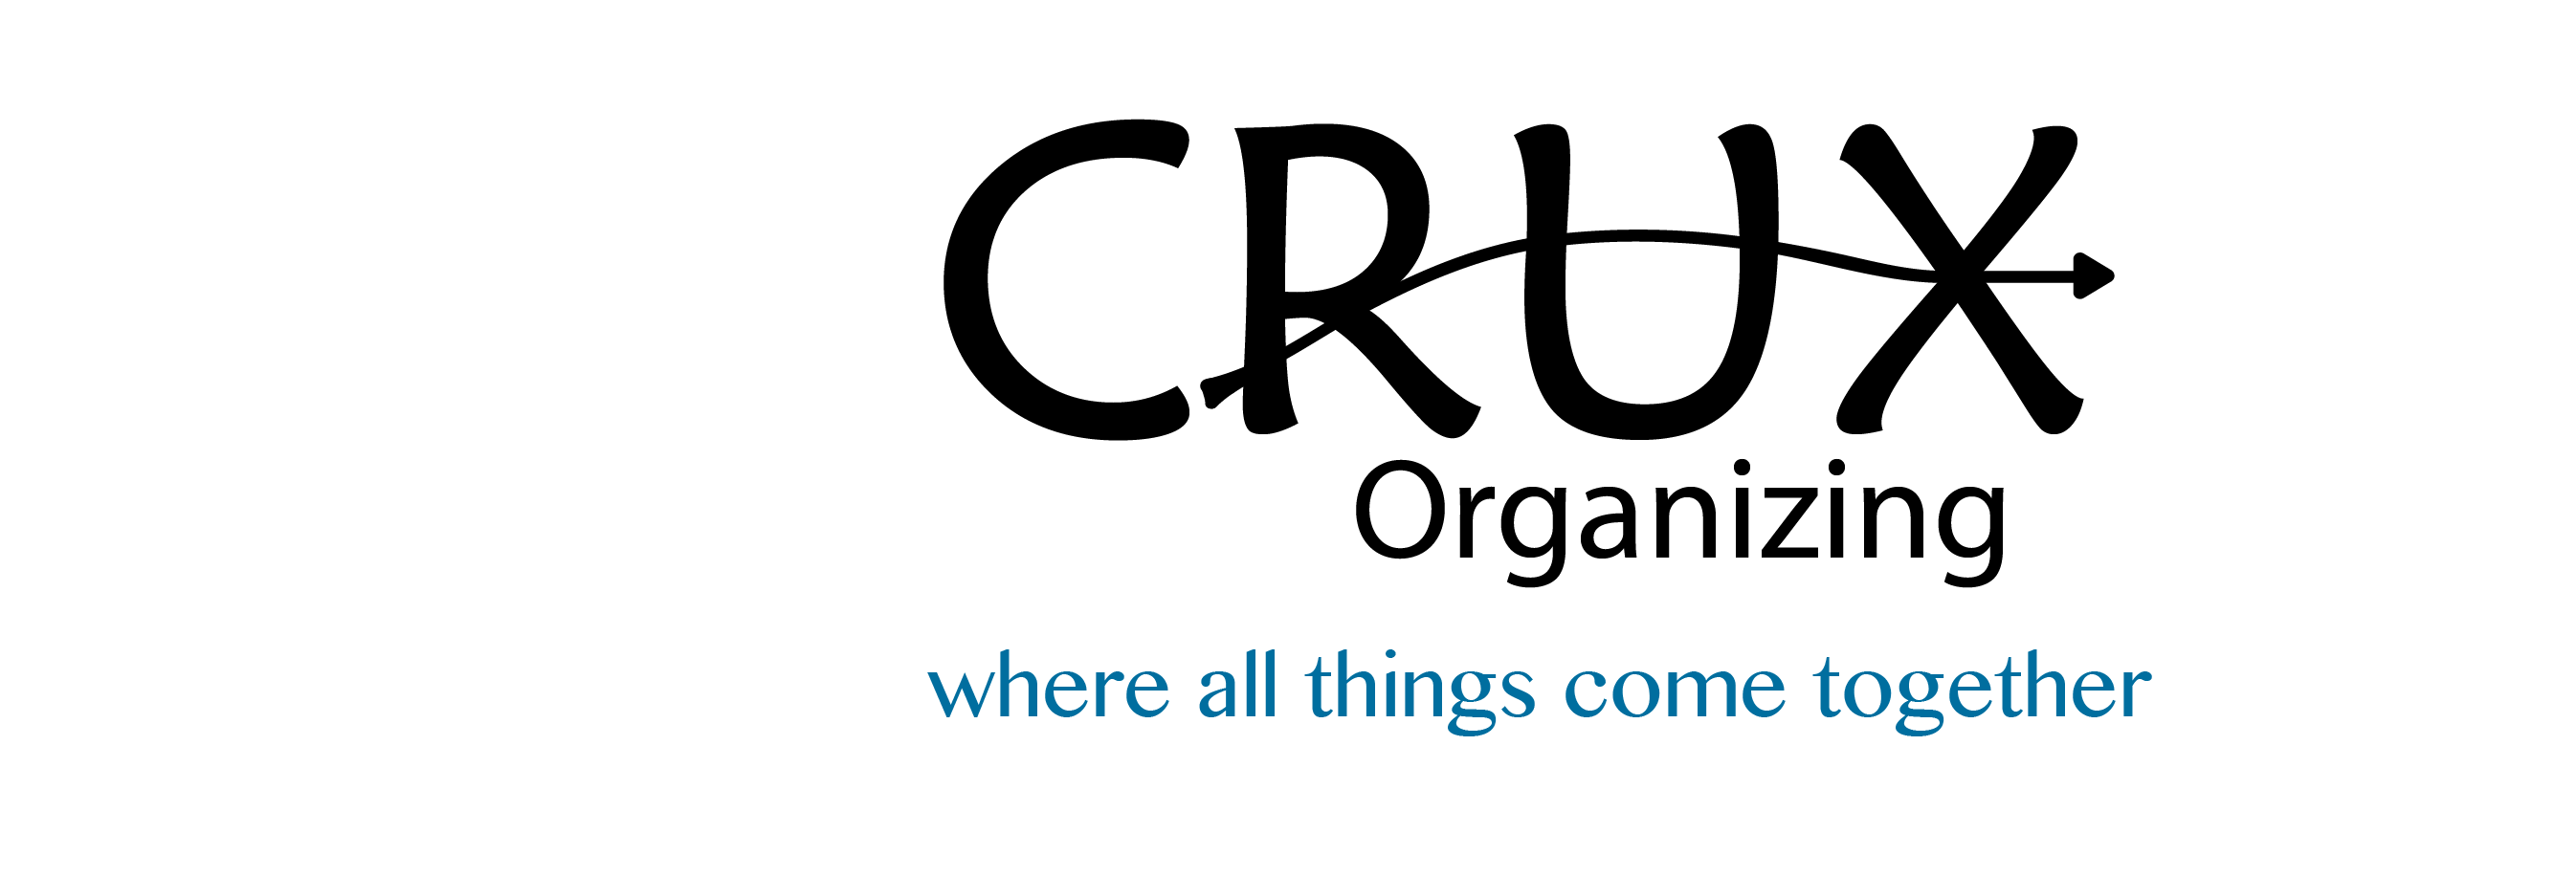 CRUX Organizing Logo